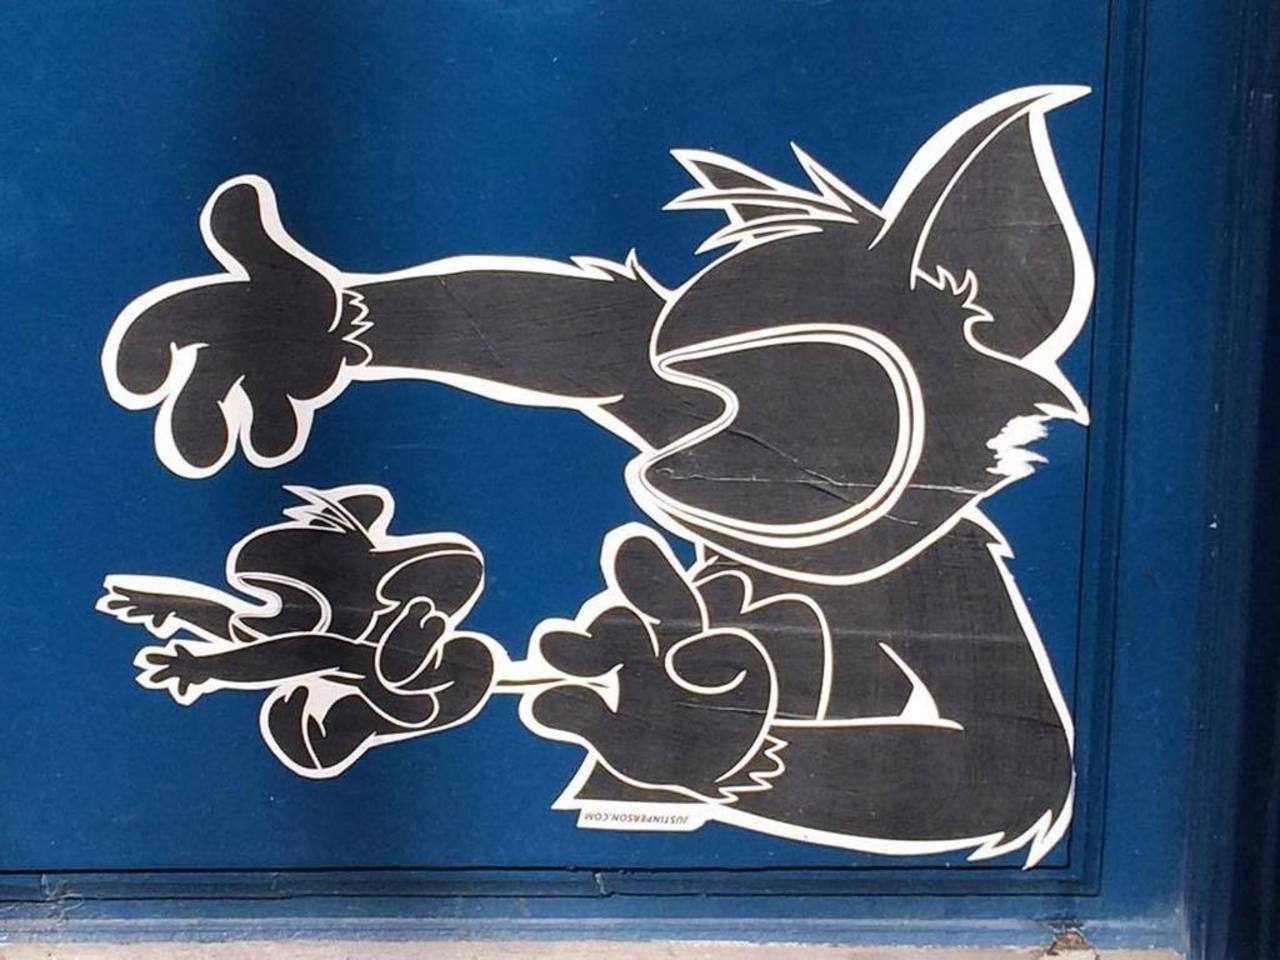 Cat&Mouse #streetphotography #parisstreetart #graffitart #graffiti #streetart #collage #stencils #welovestreetart #… http://t.co/r21hwpdp4A